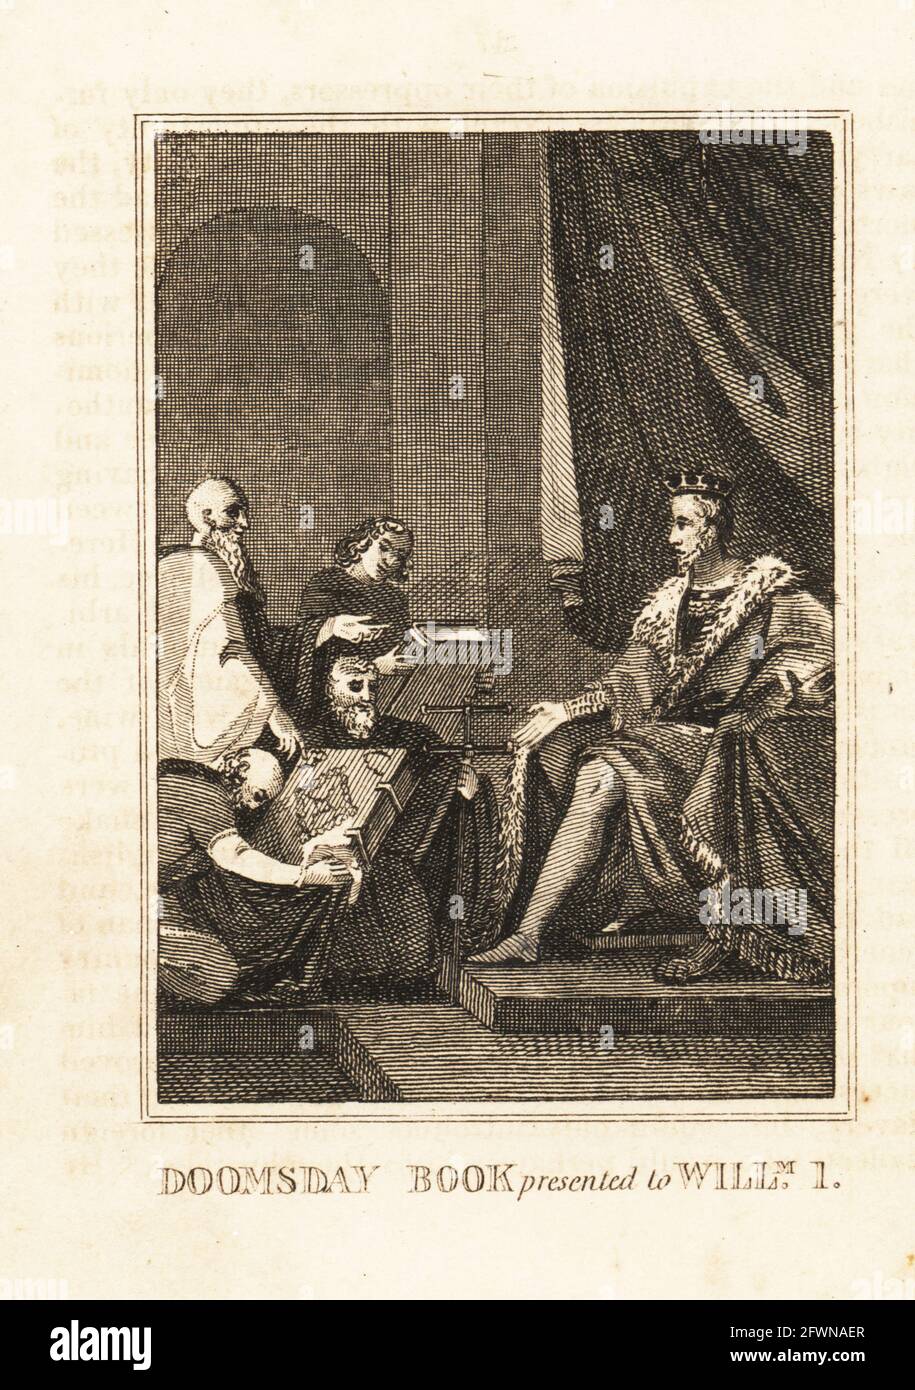 Le roi William I d'Angleterre reçoit le Livre de Domesday en 1086. Livre de doomsday présenté à William I. Copperplate gravure de l'histoire de l'Angleterre de M. A. Jones de Julius Caesar à George IV, G. Virtue, 26 Ivy Lane, Londres, 1836. Banque D'Images